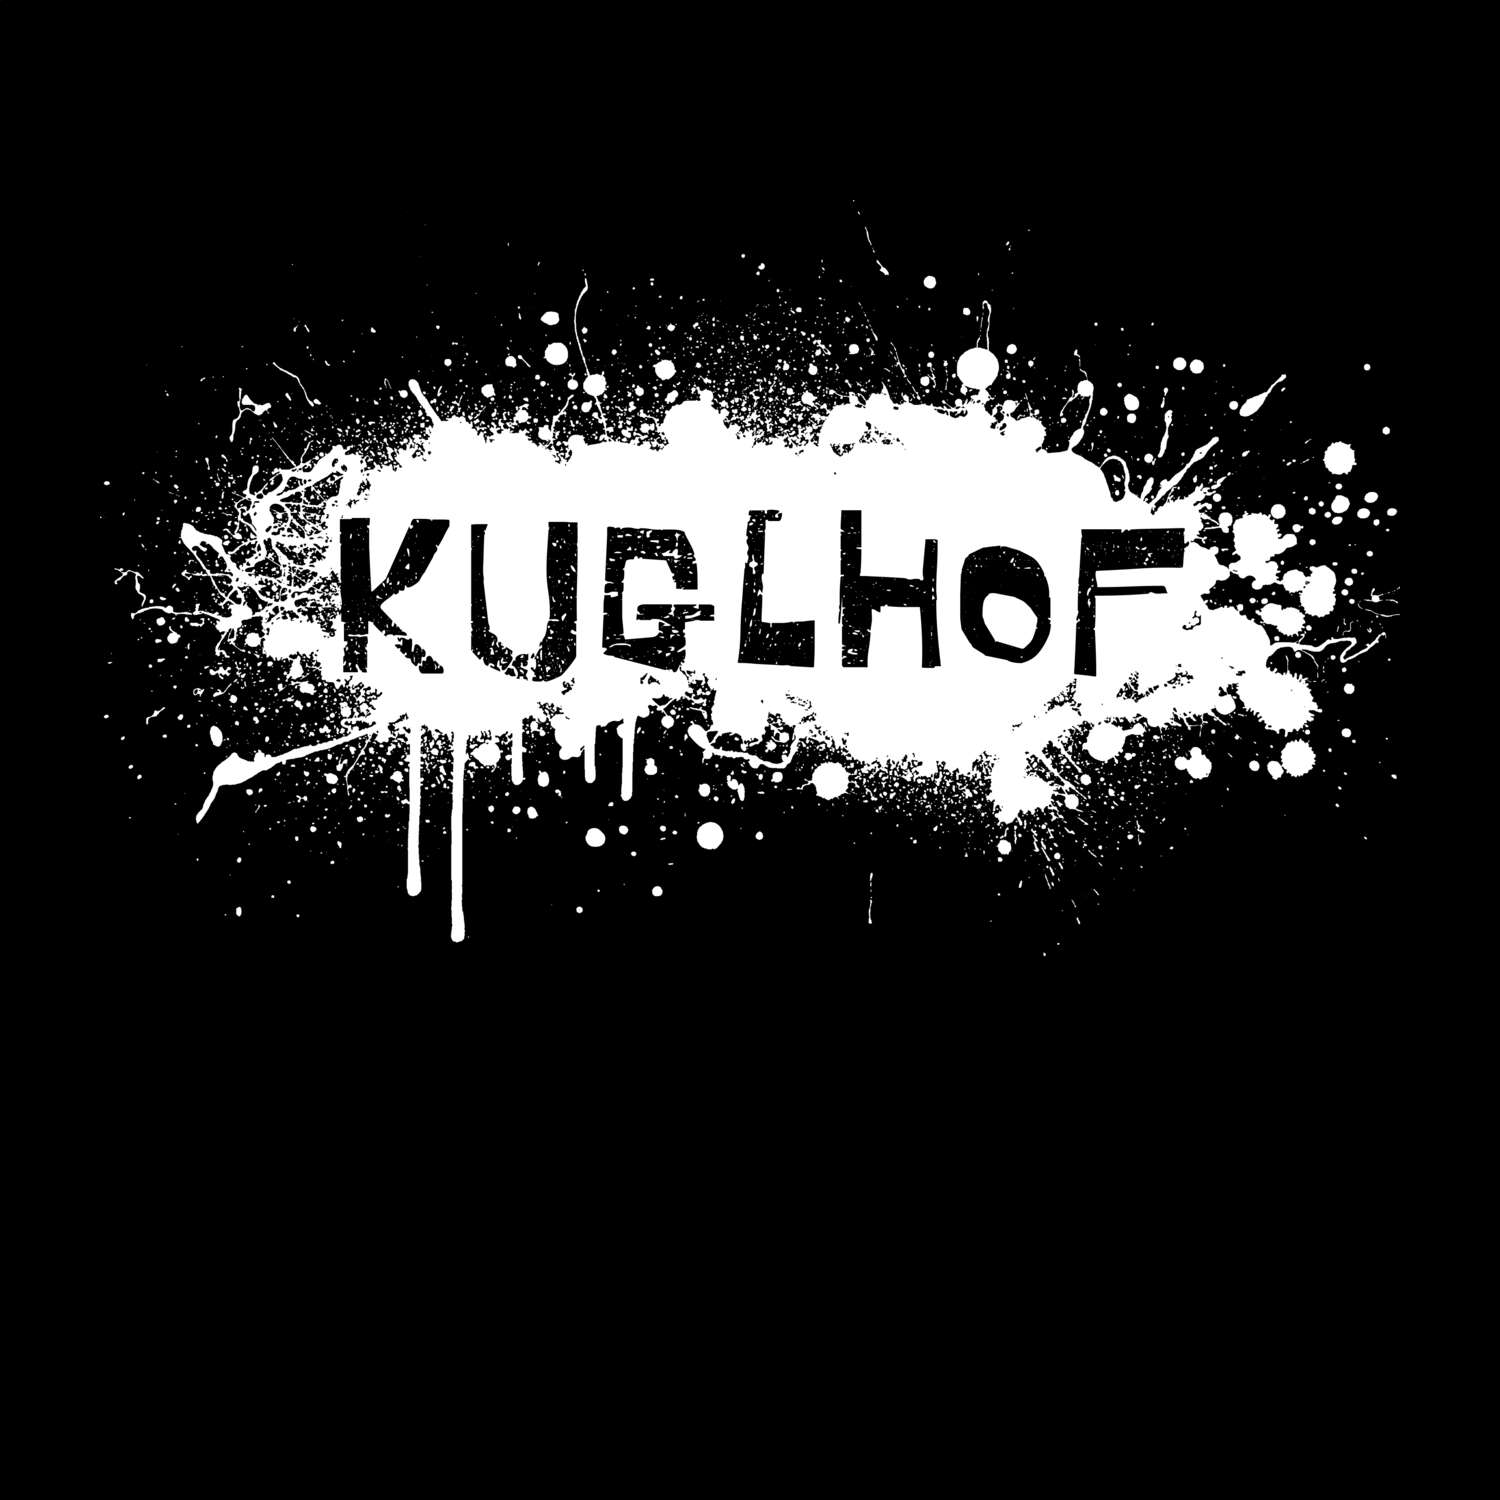 Kuglhof T-Shirt »Paint Splash Punk«